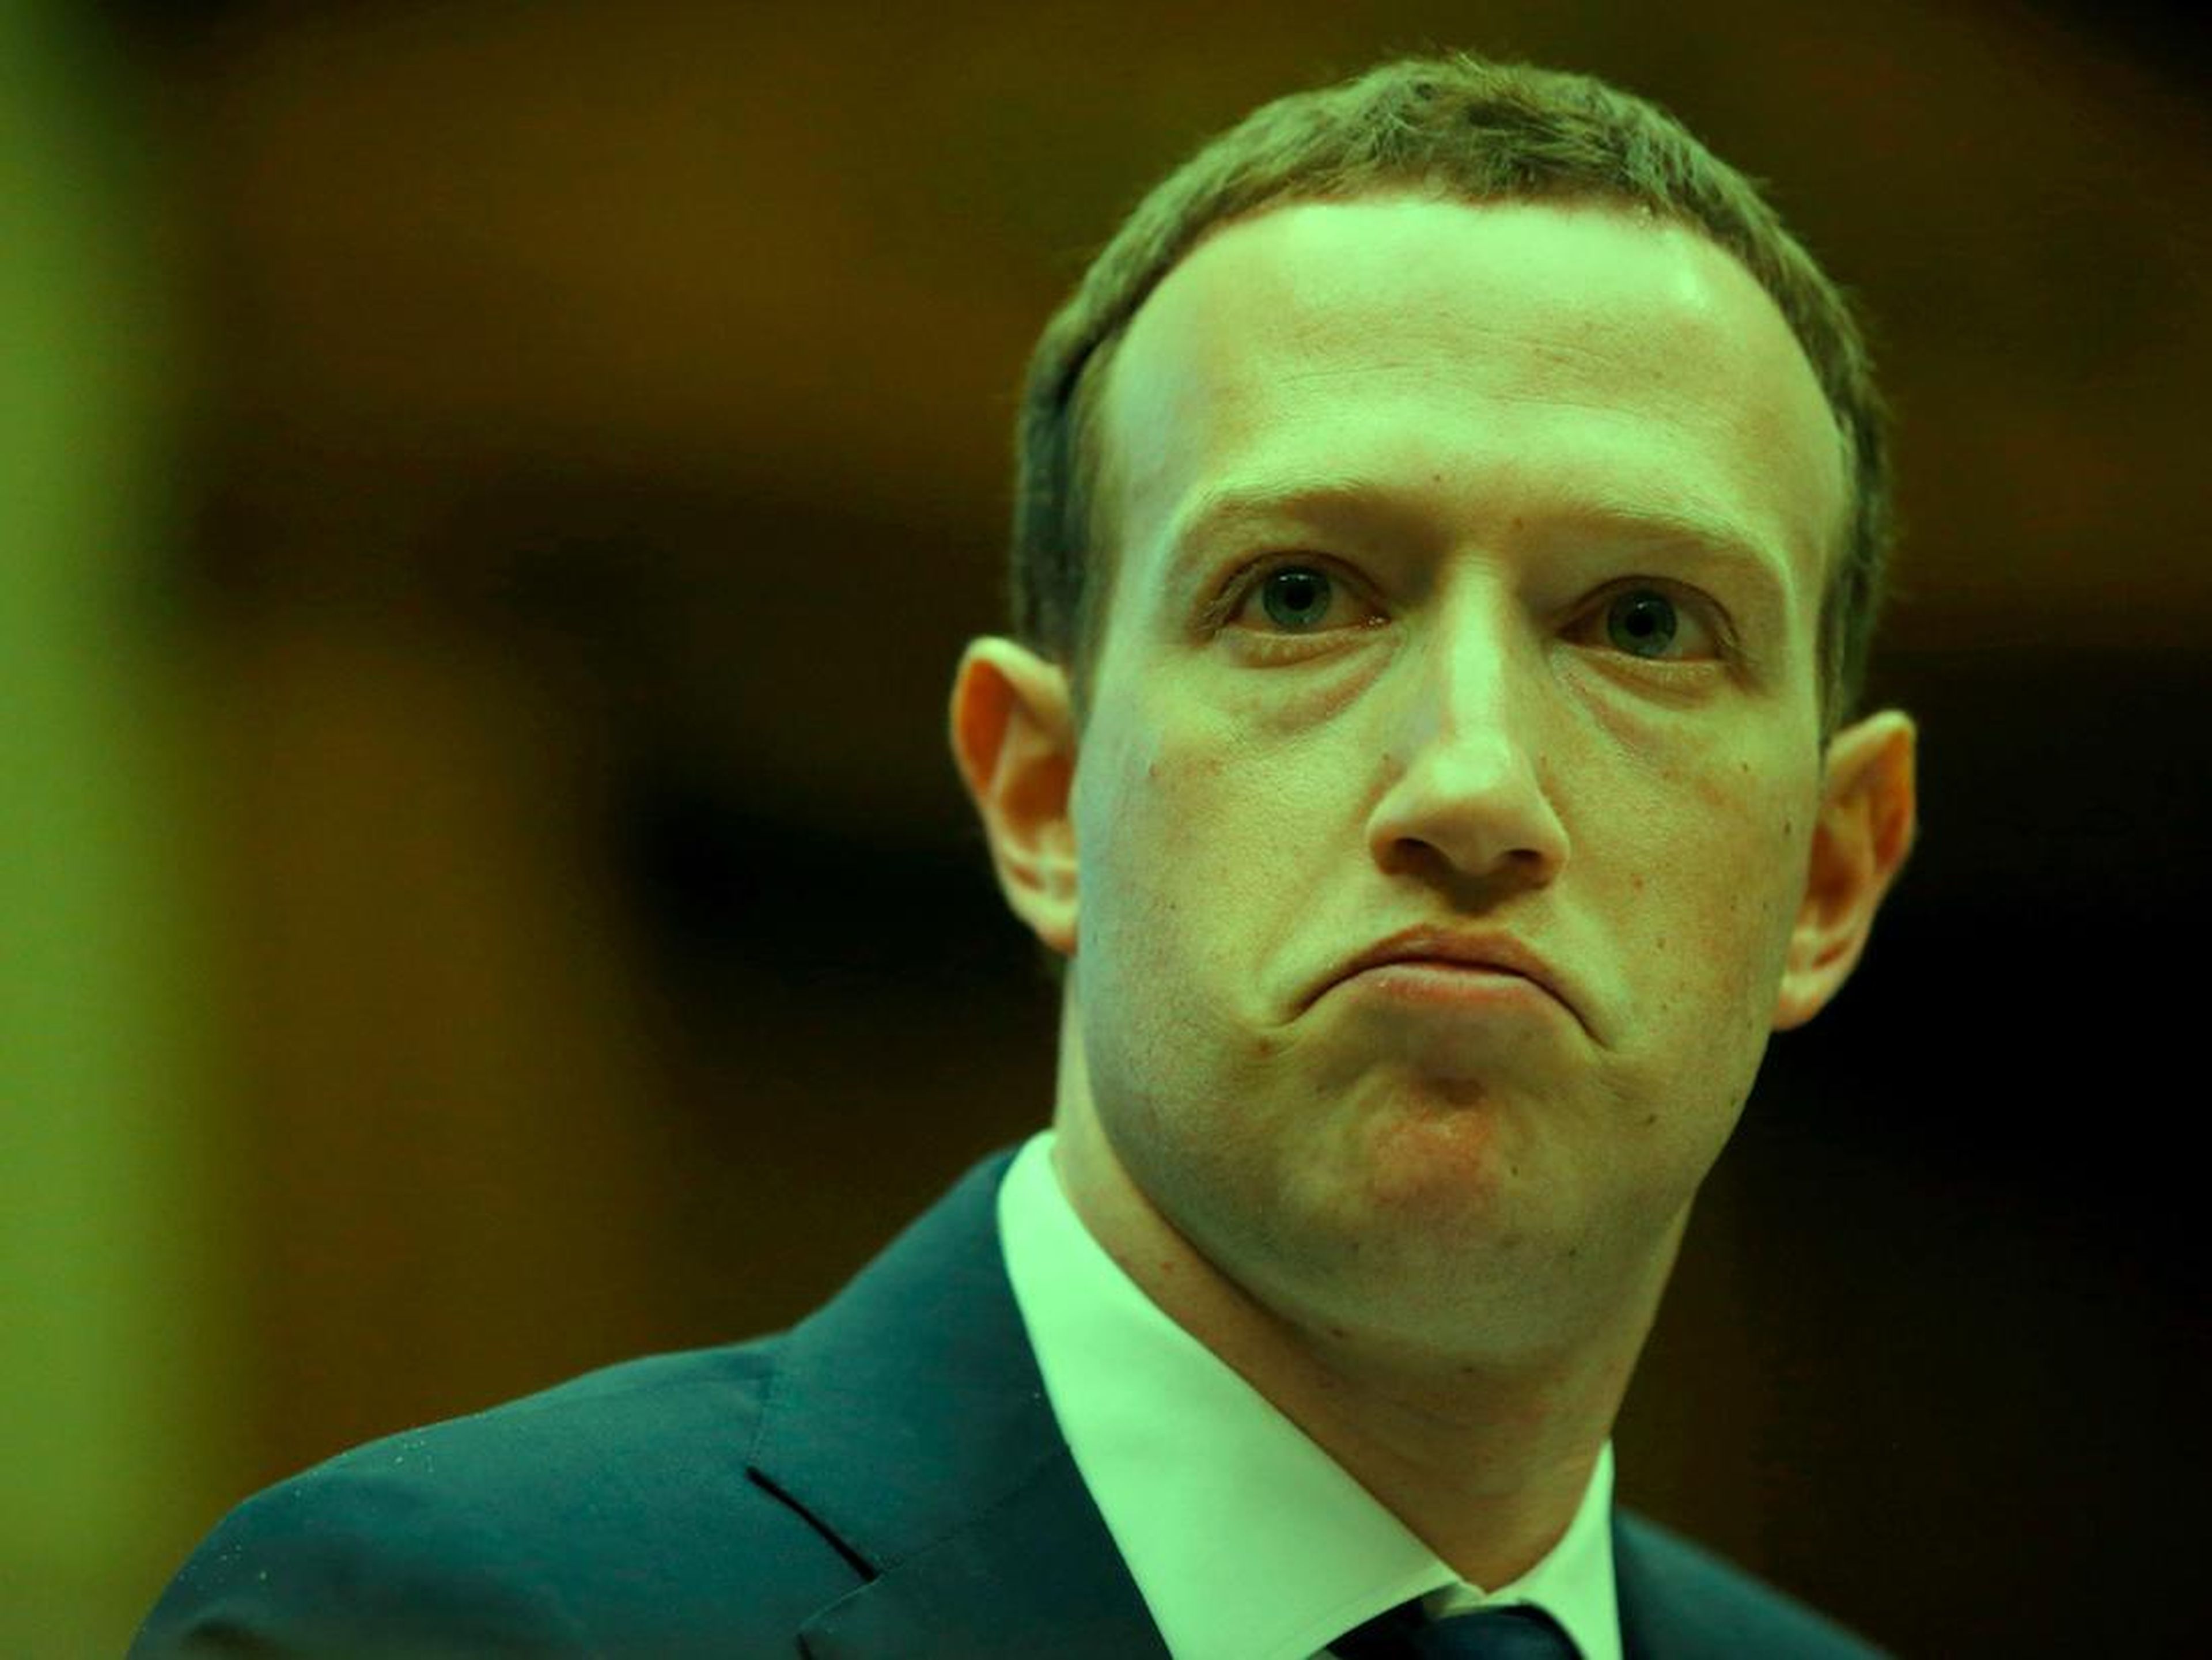 El CEO de Facebook, Mark Zuckerberg, durante el interrogatorio en el Congreso estadounidense.